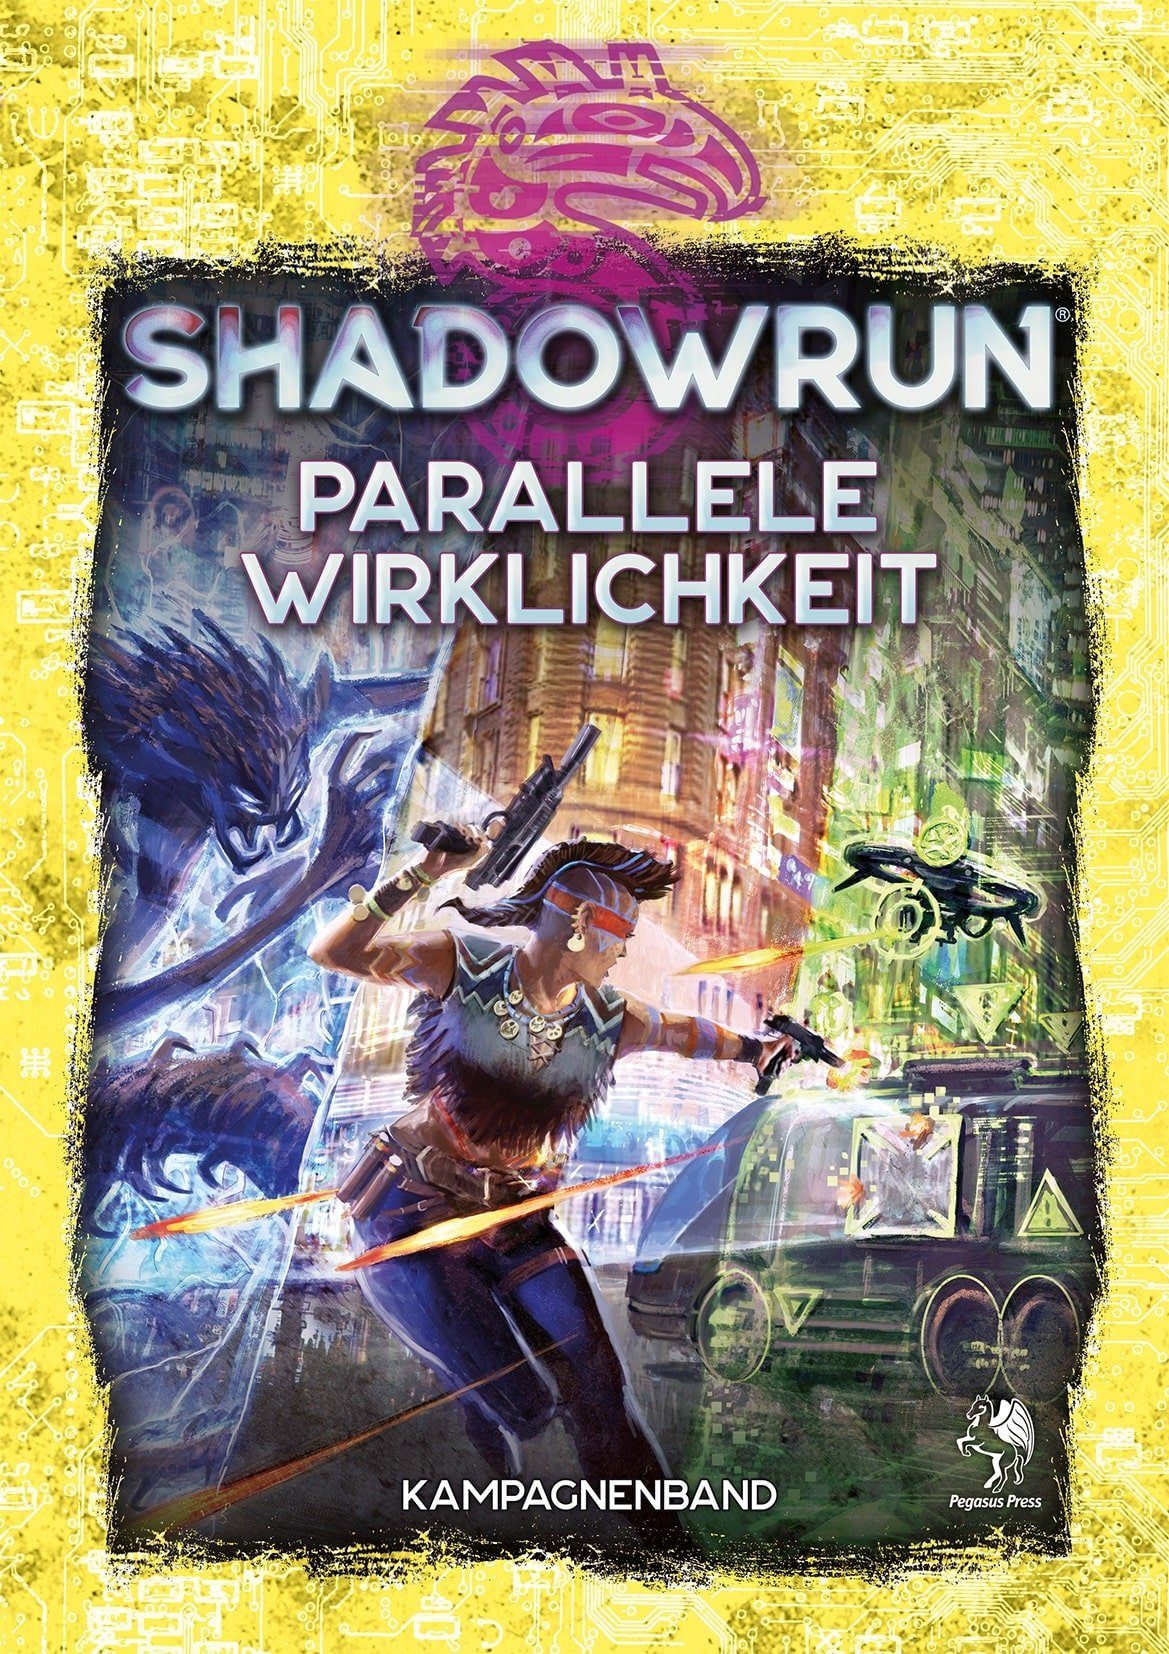 Shadowrun: Wirklichkeit Spiele (Hardcover) Pegasus Spiel, Parallele